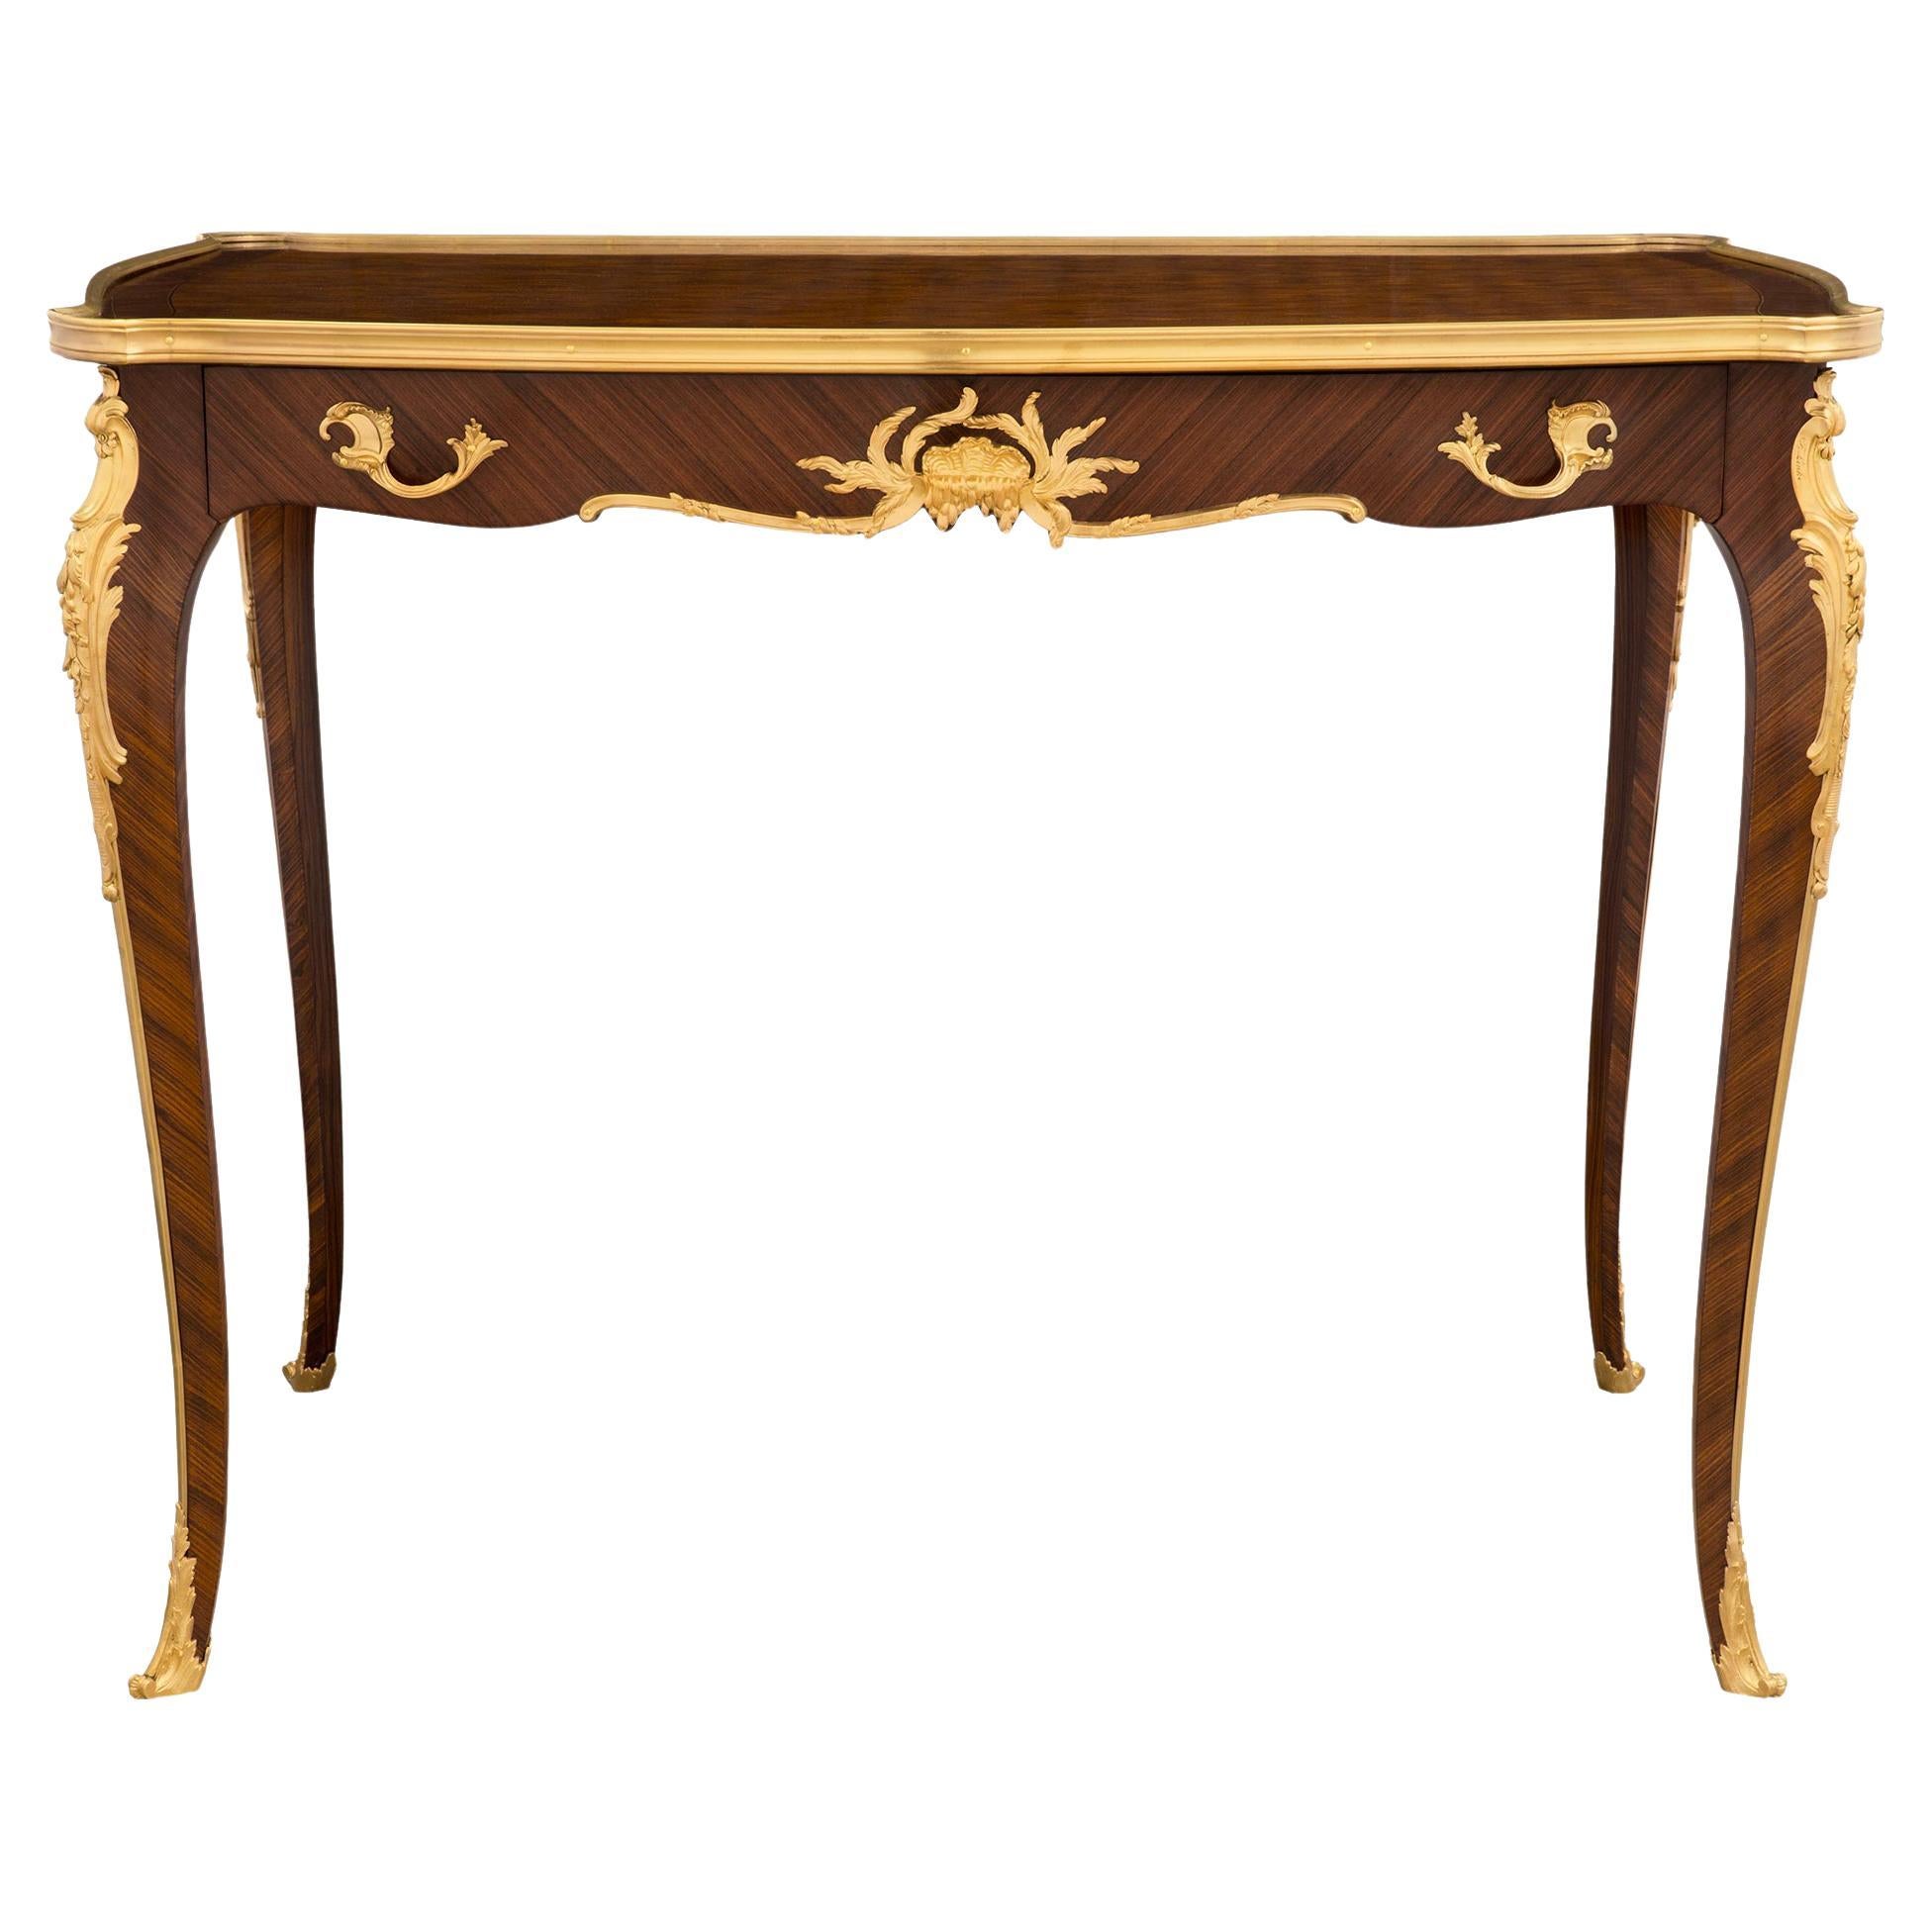 Table d'appoint/bureau française de style Louis XV du 19ème siècle, signée F. Linke